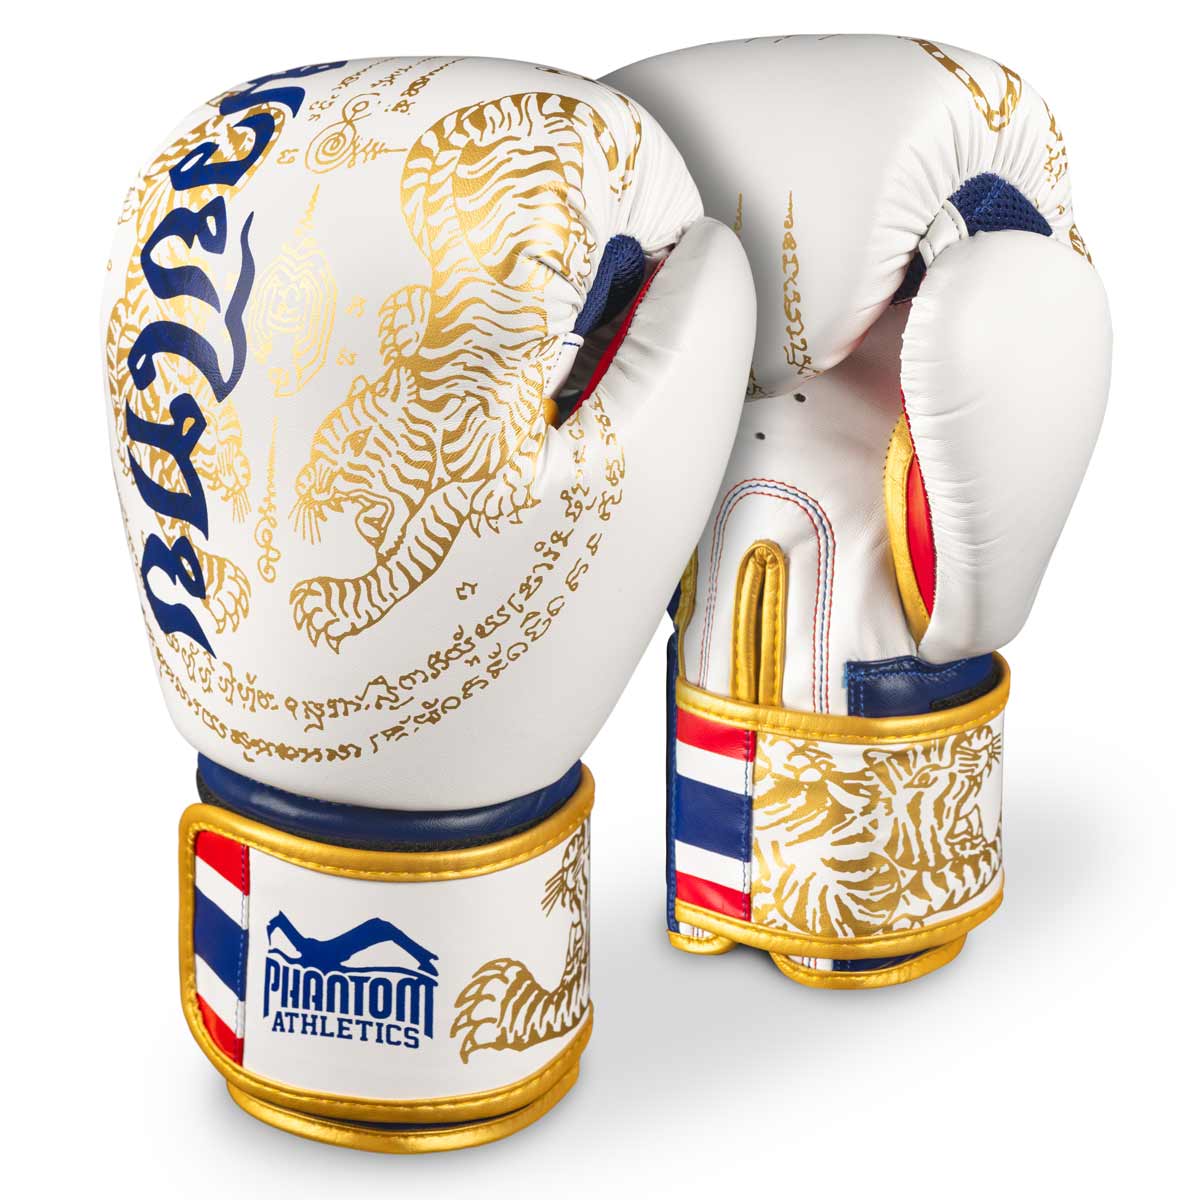 Phantom Muay Thai boxkesztyű thai mintával limitált fehér/arany/kék/piros színben.